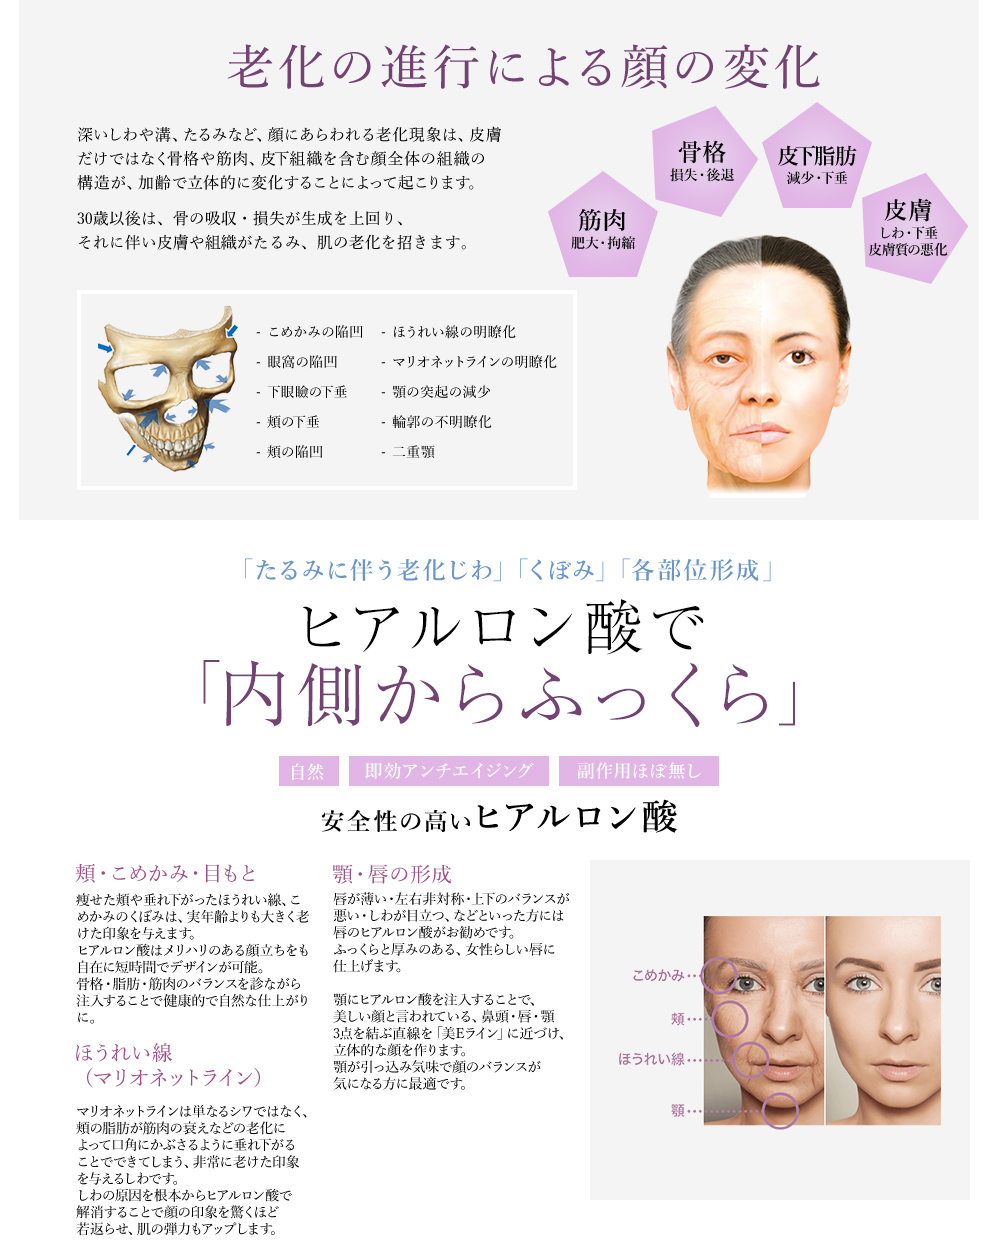 老化の進行による顔の変化 ヒアルロン酸で「内側からふっくら」